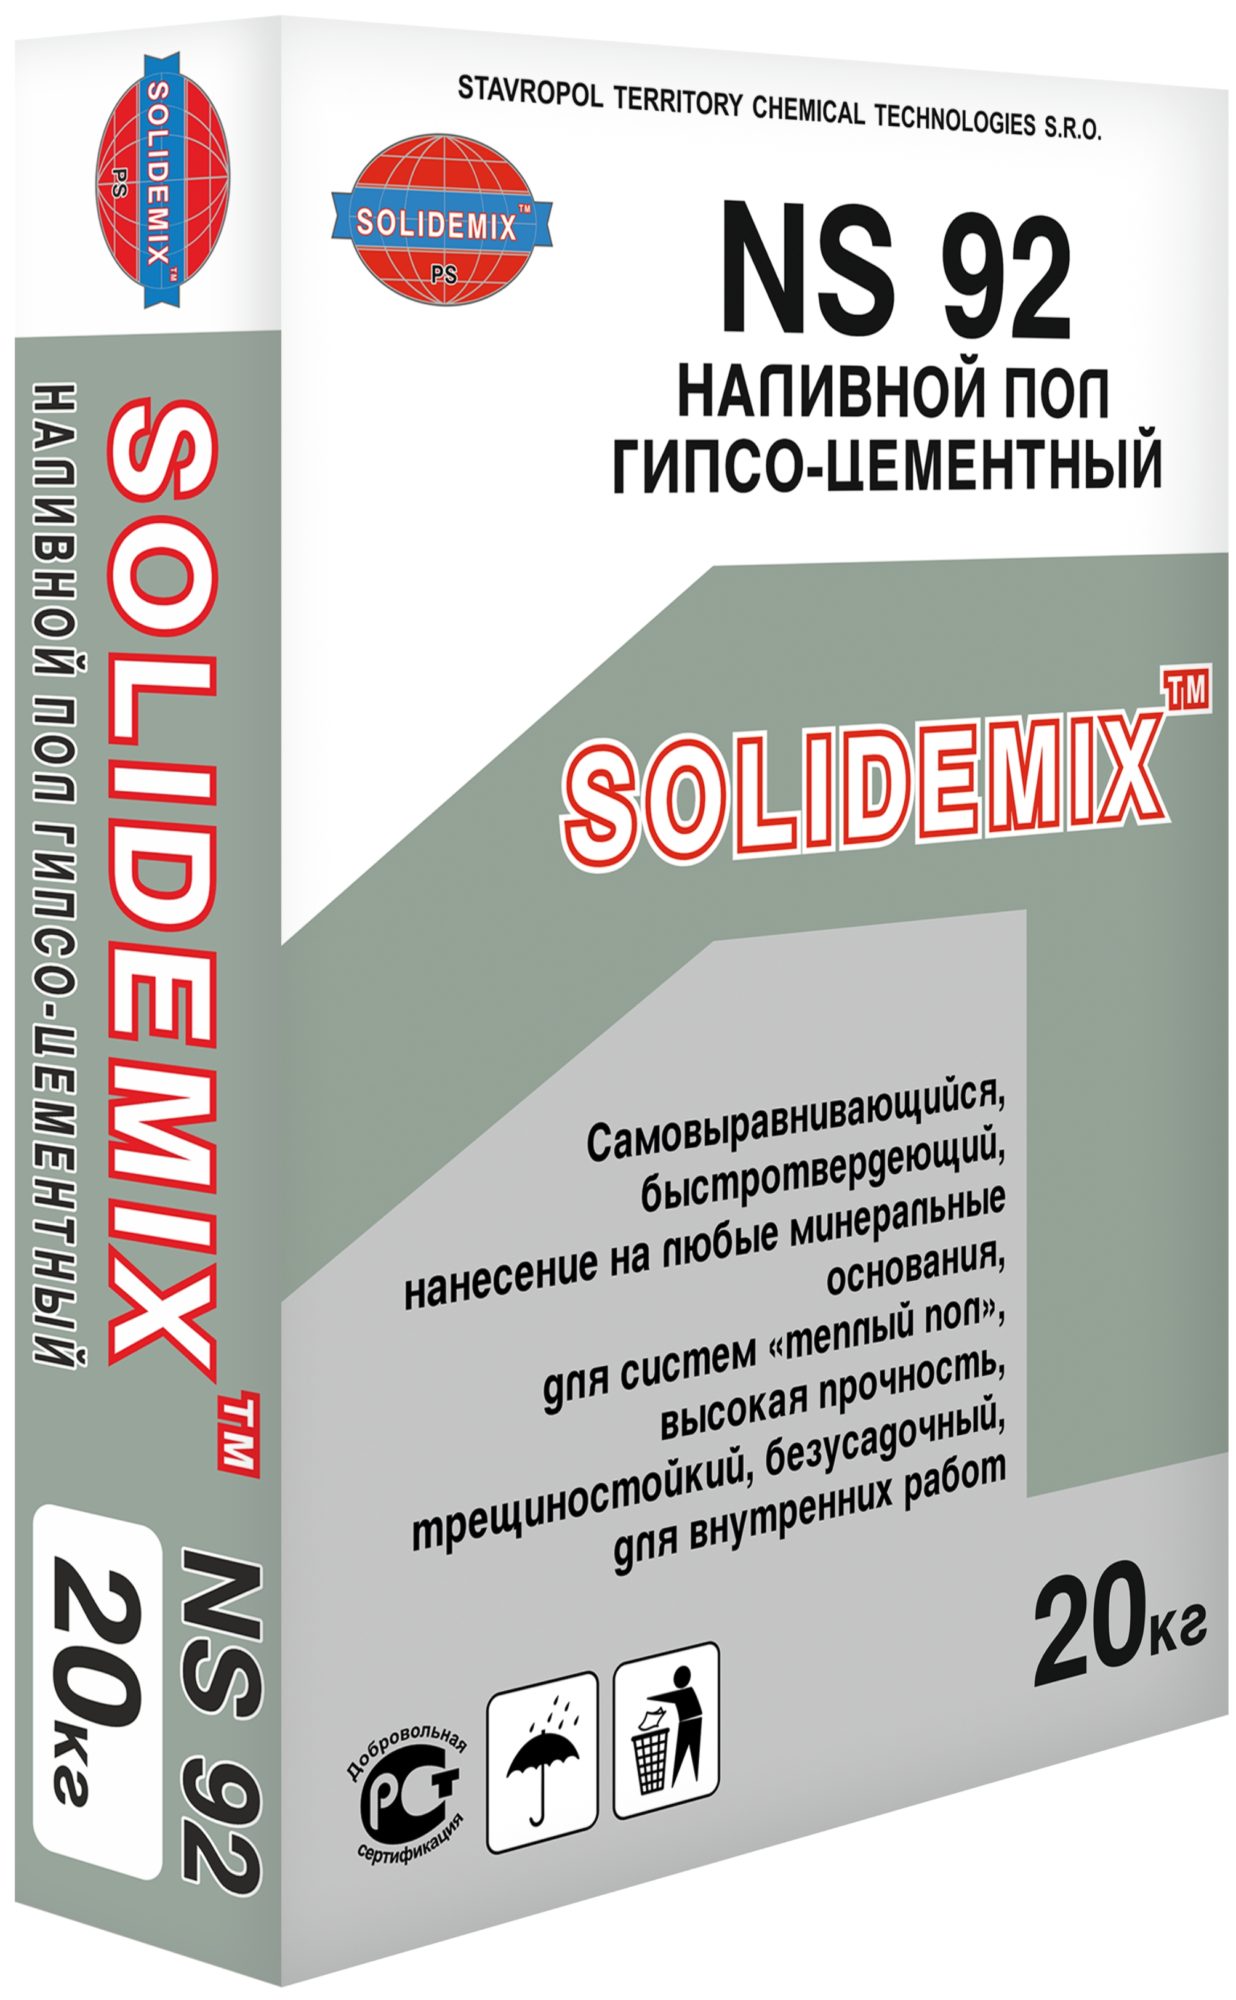 Купить Наливной пол гипсо-цементный «SOLIDEMIX NS 92» (Уровень) от SOLIDEMIX